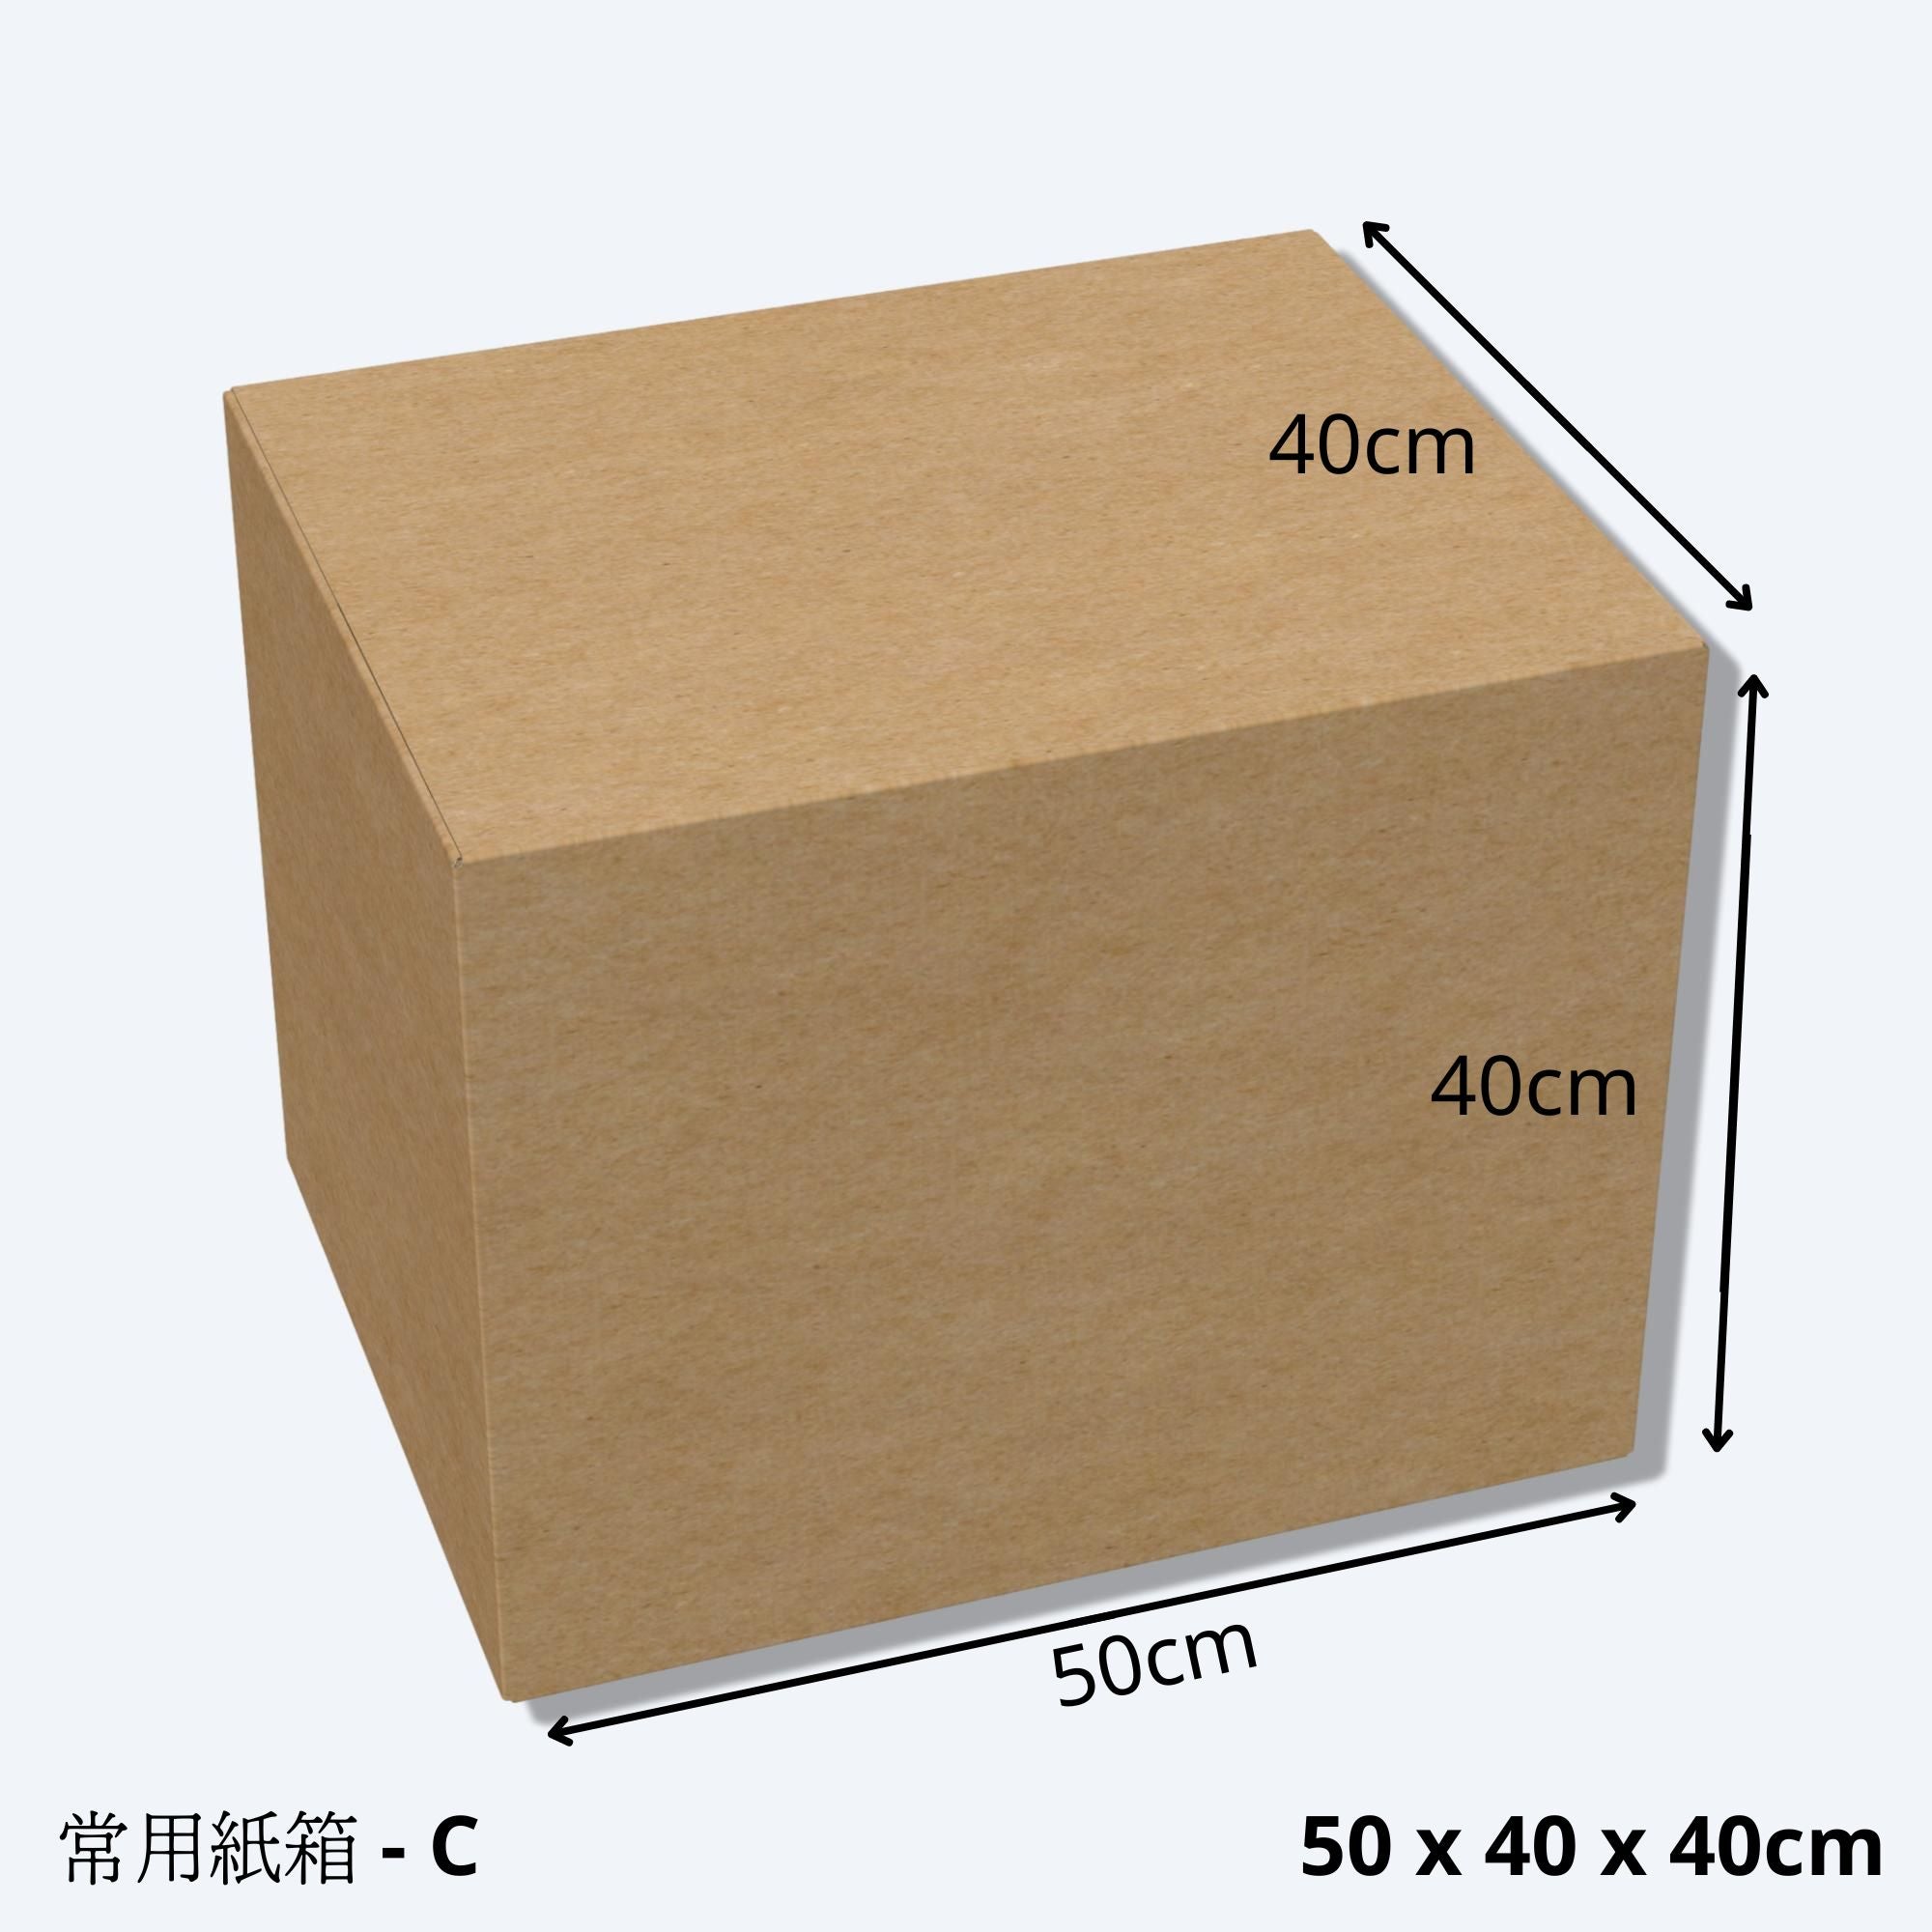 搬屋紙皮箱(尺寸C - 50 x 40 X 40cm)的尺寸示意圖。搬屋紙皮箱C堅固耐用，專為搬屋而設計，適用於電子商務、移民、物流、倉儲、運輸、包裝及搬屋收納。